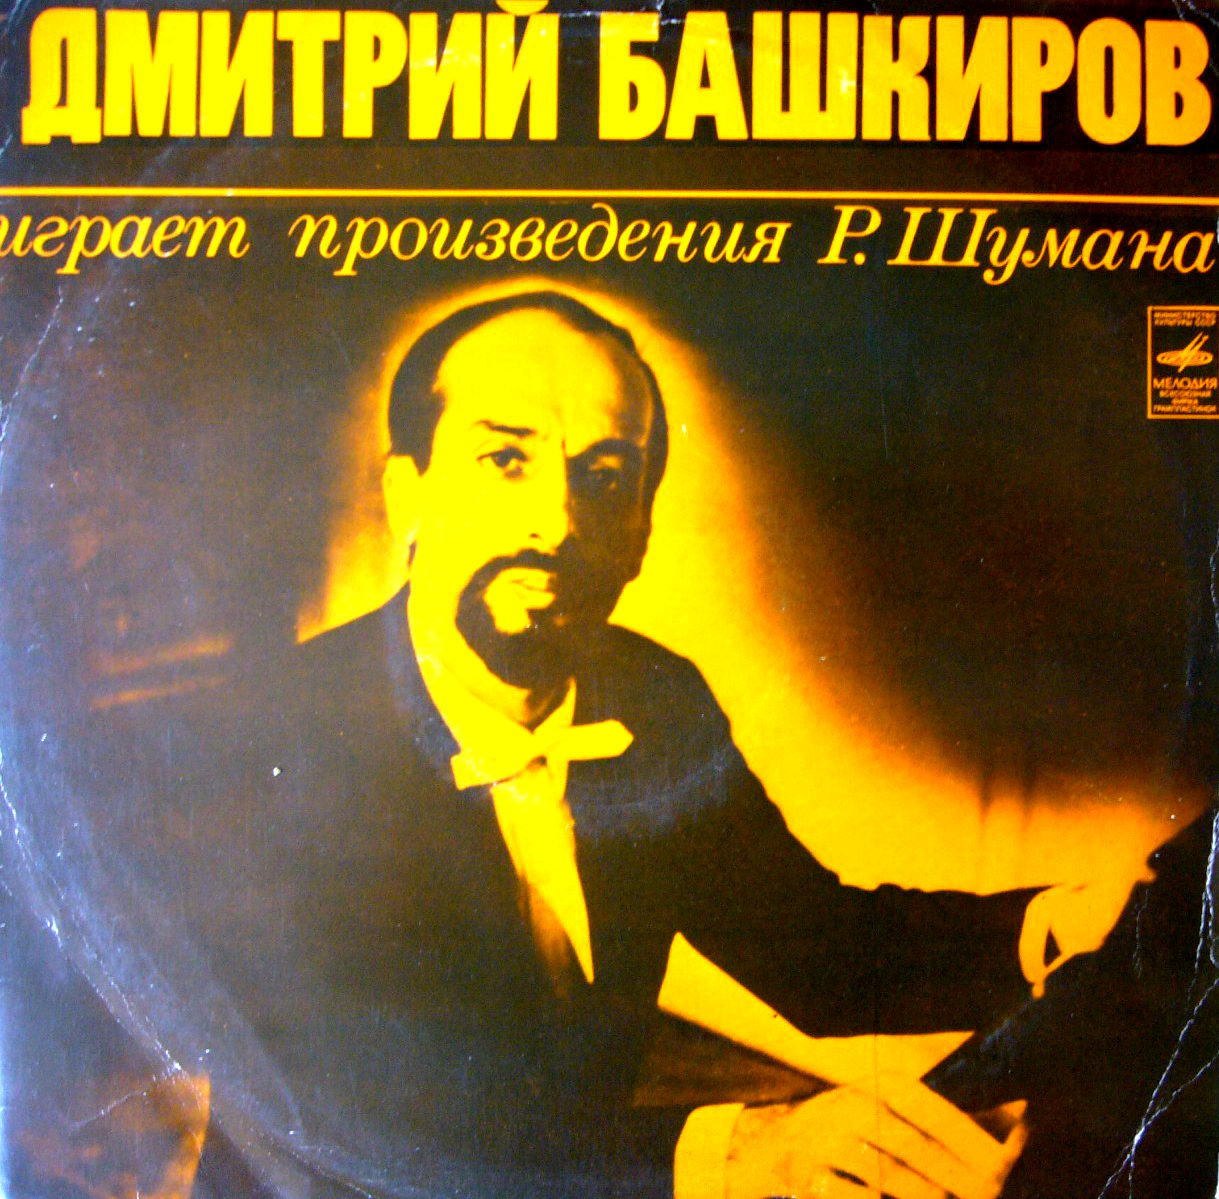 БАШКИРОВ Дмитрий (фортепиано) играет произведения Р. Шумана